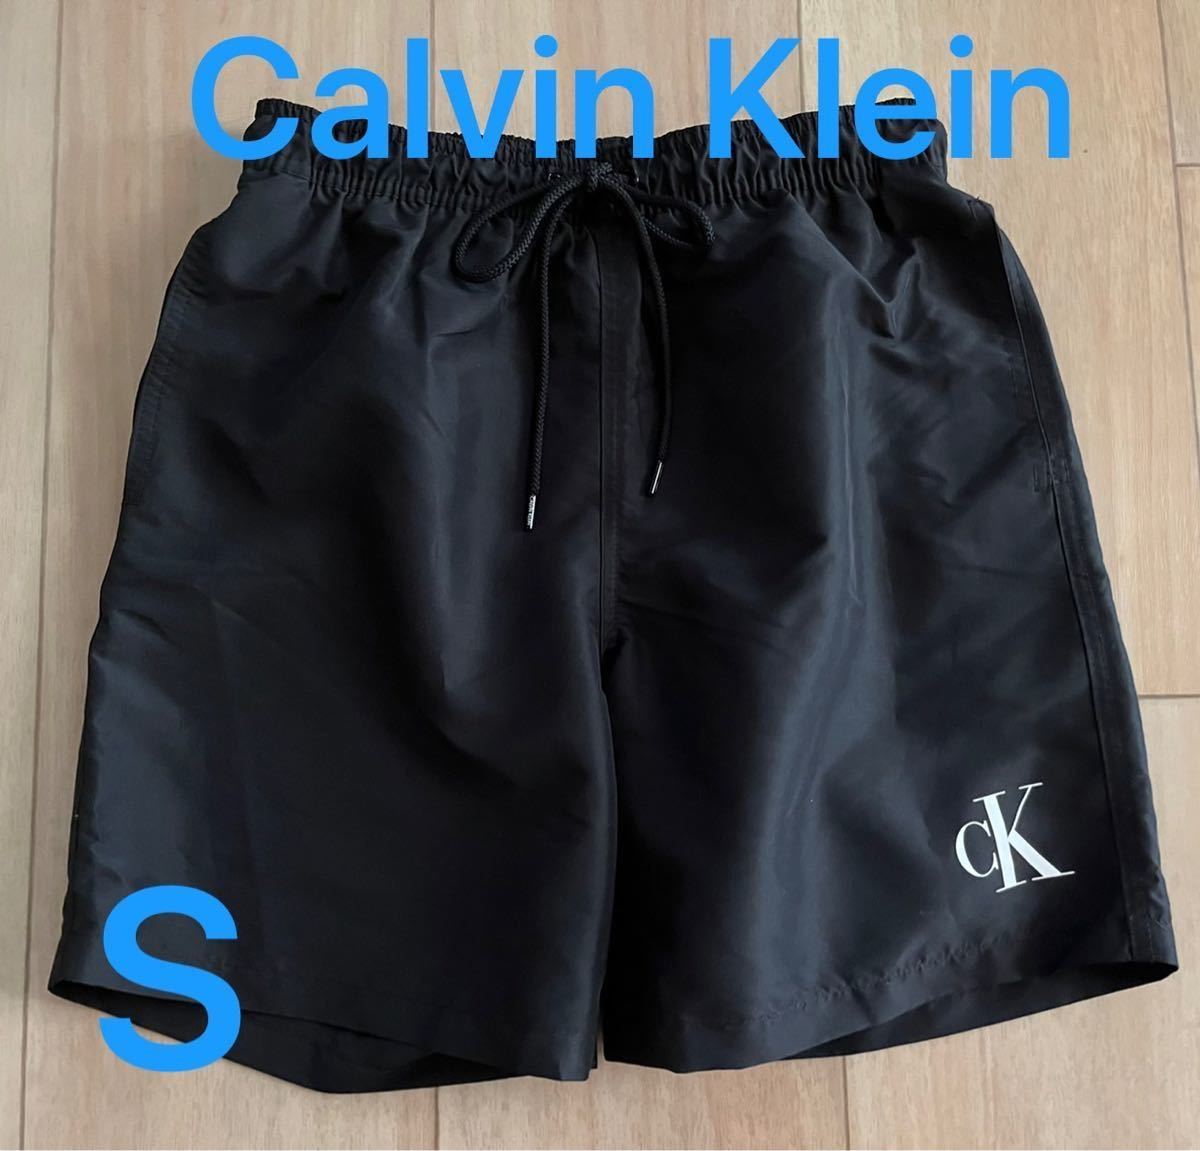 【送料無料】新品■Calvin Klein カルバンクライン メンズ 水着 S サイズ ショートパンツ スイムウエアー 黒_画像1